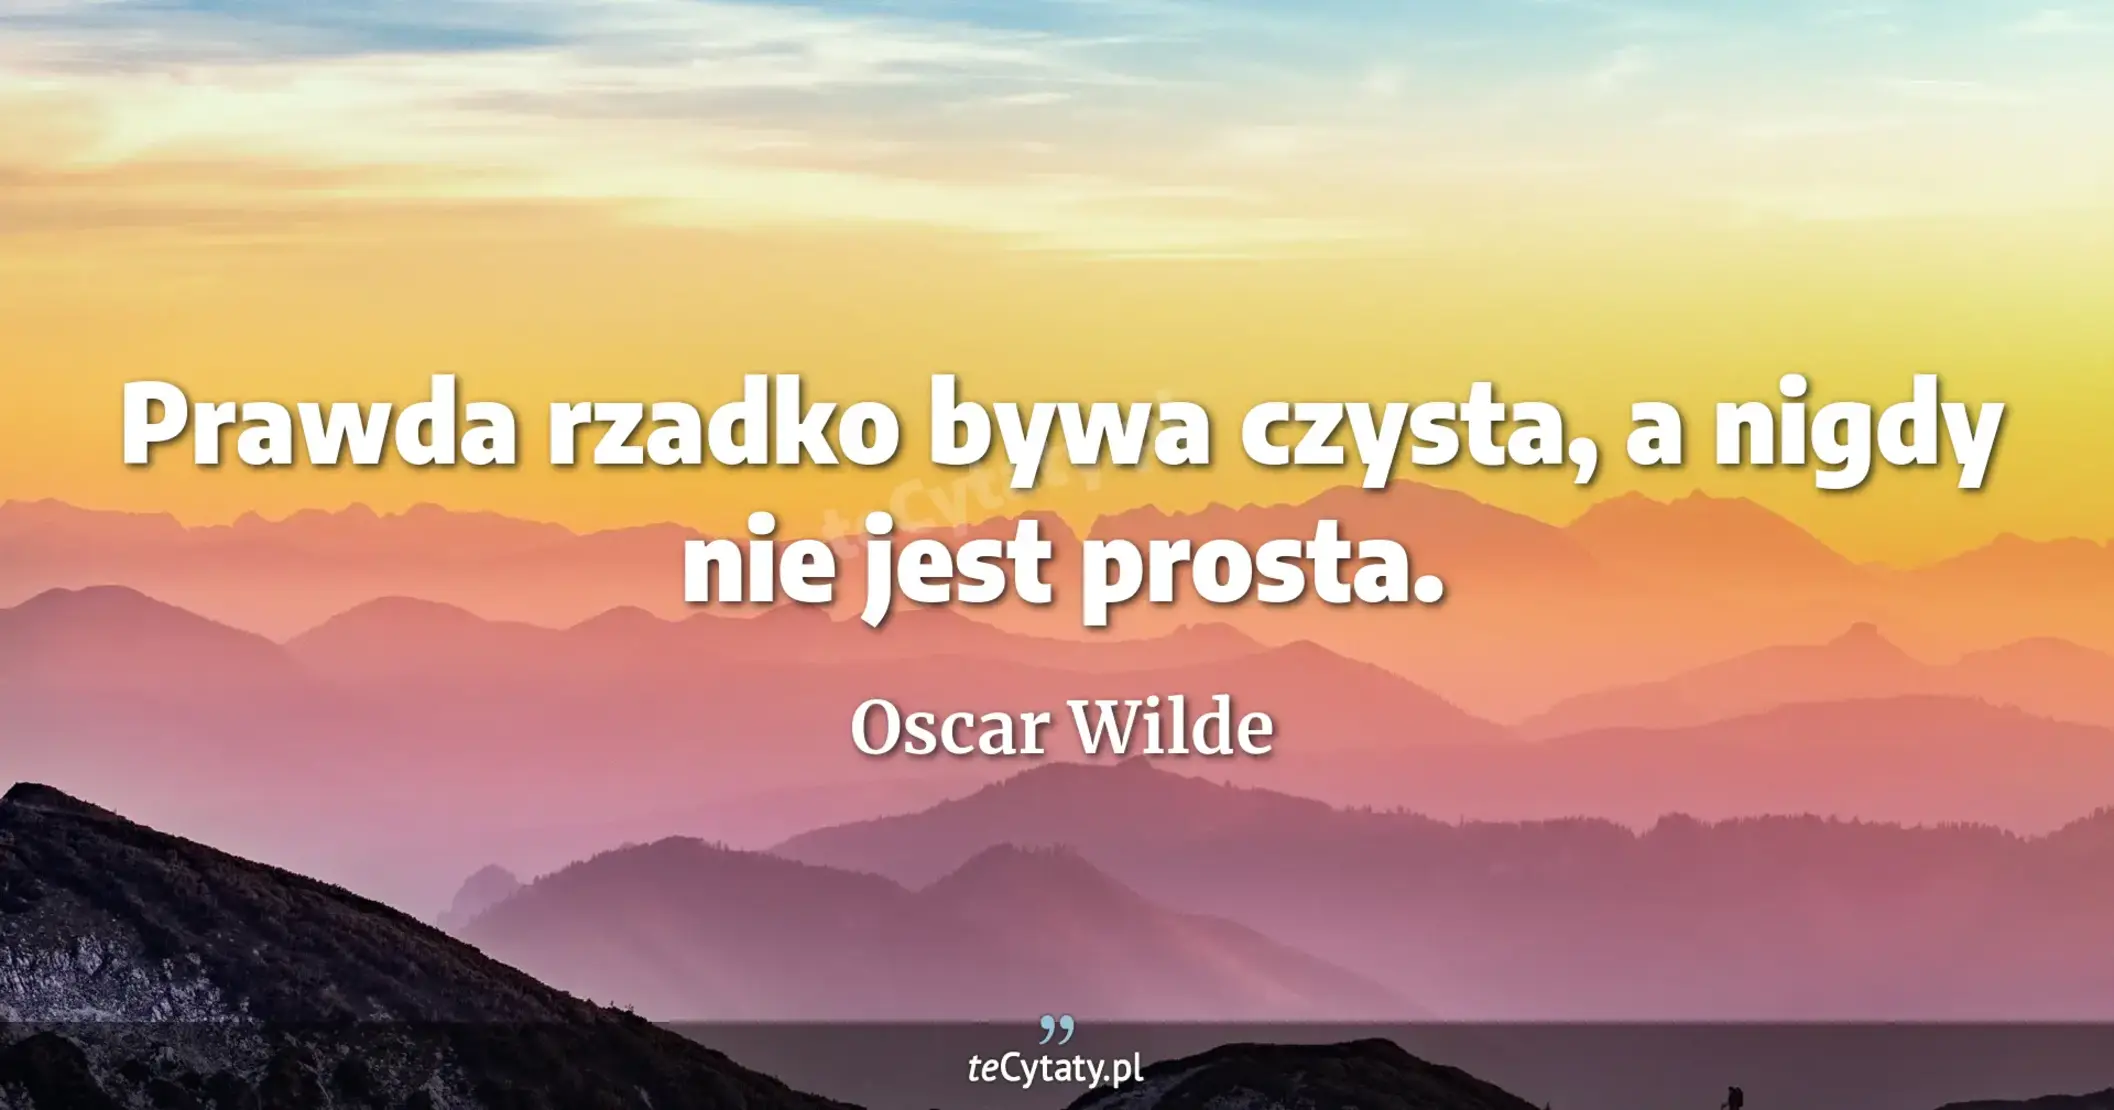 Prawda rzadko bywa czysta, a nigdy nie jest prosta. - Oscar Wilde